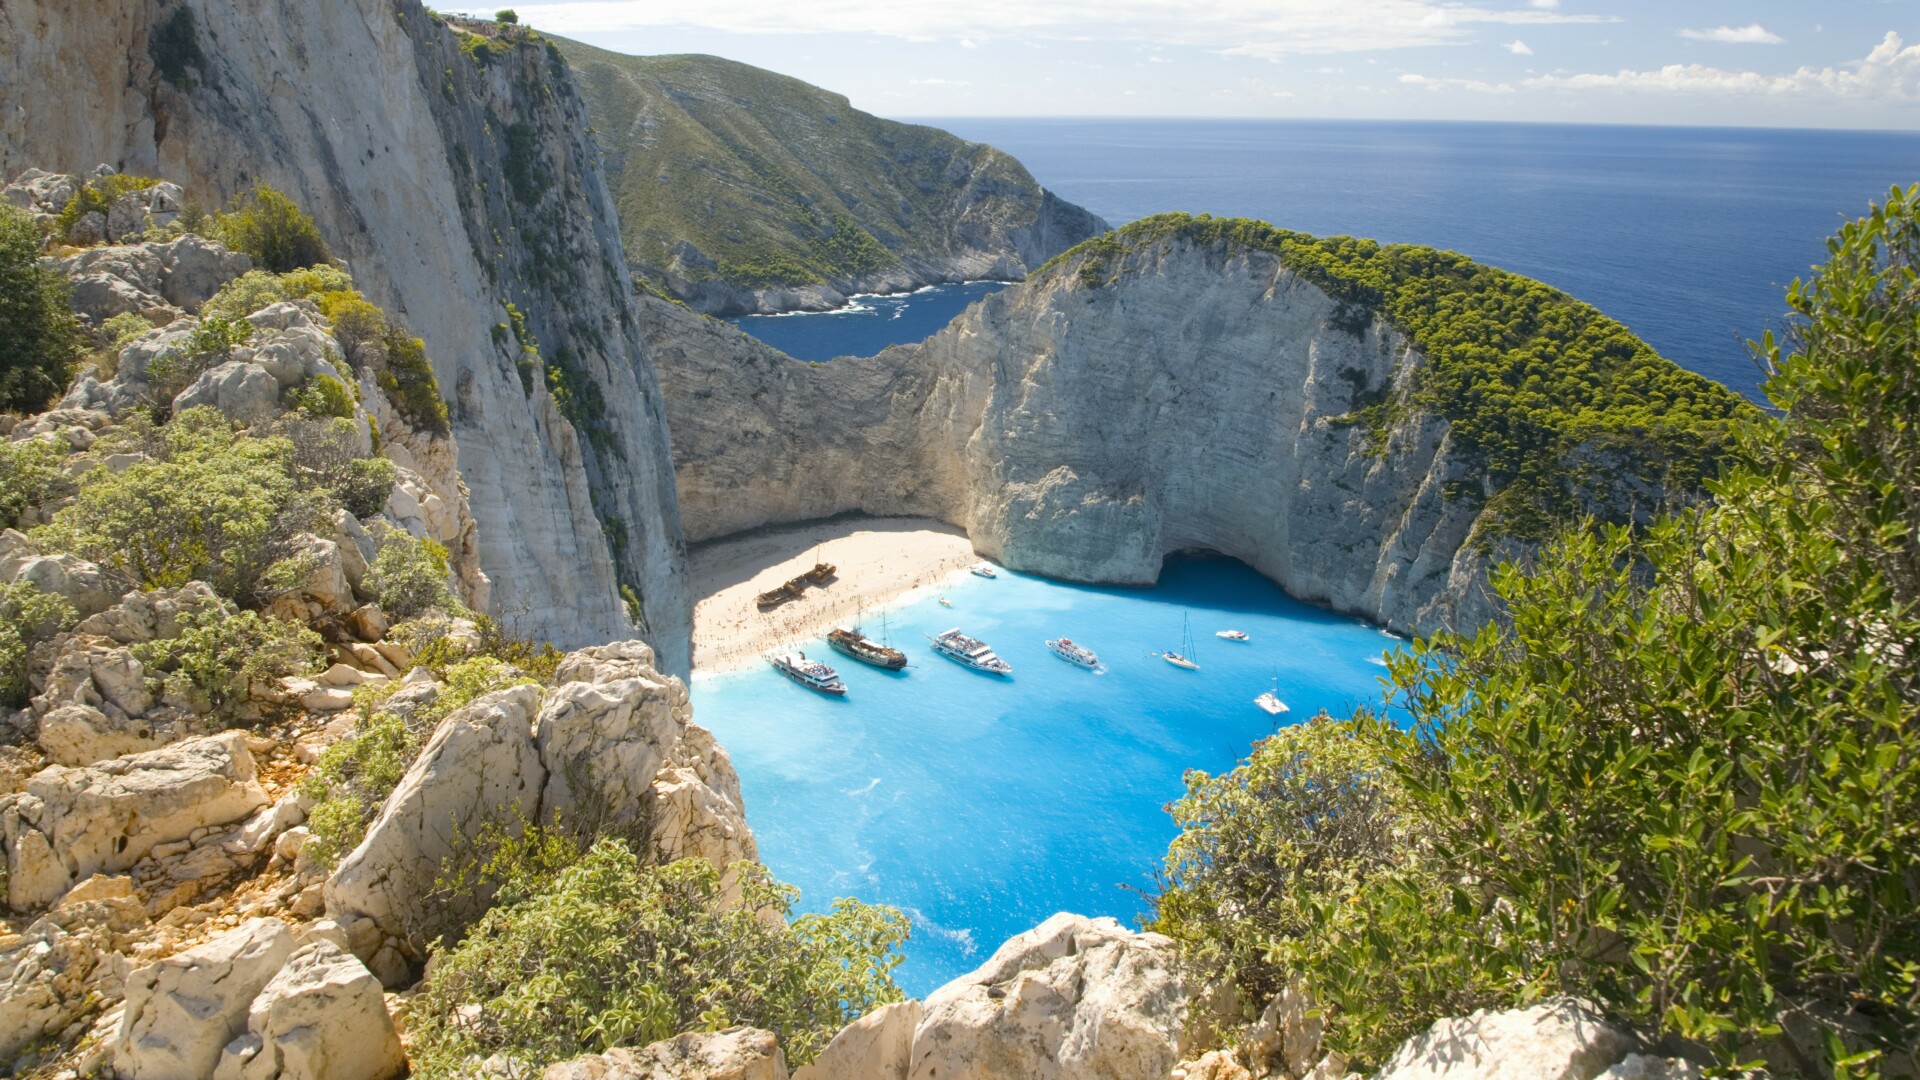 Numărul turiştilor din insulele greceşti îl depășește pe cel al localnicilor. “Turismul devine nesustenabil”